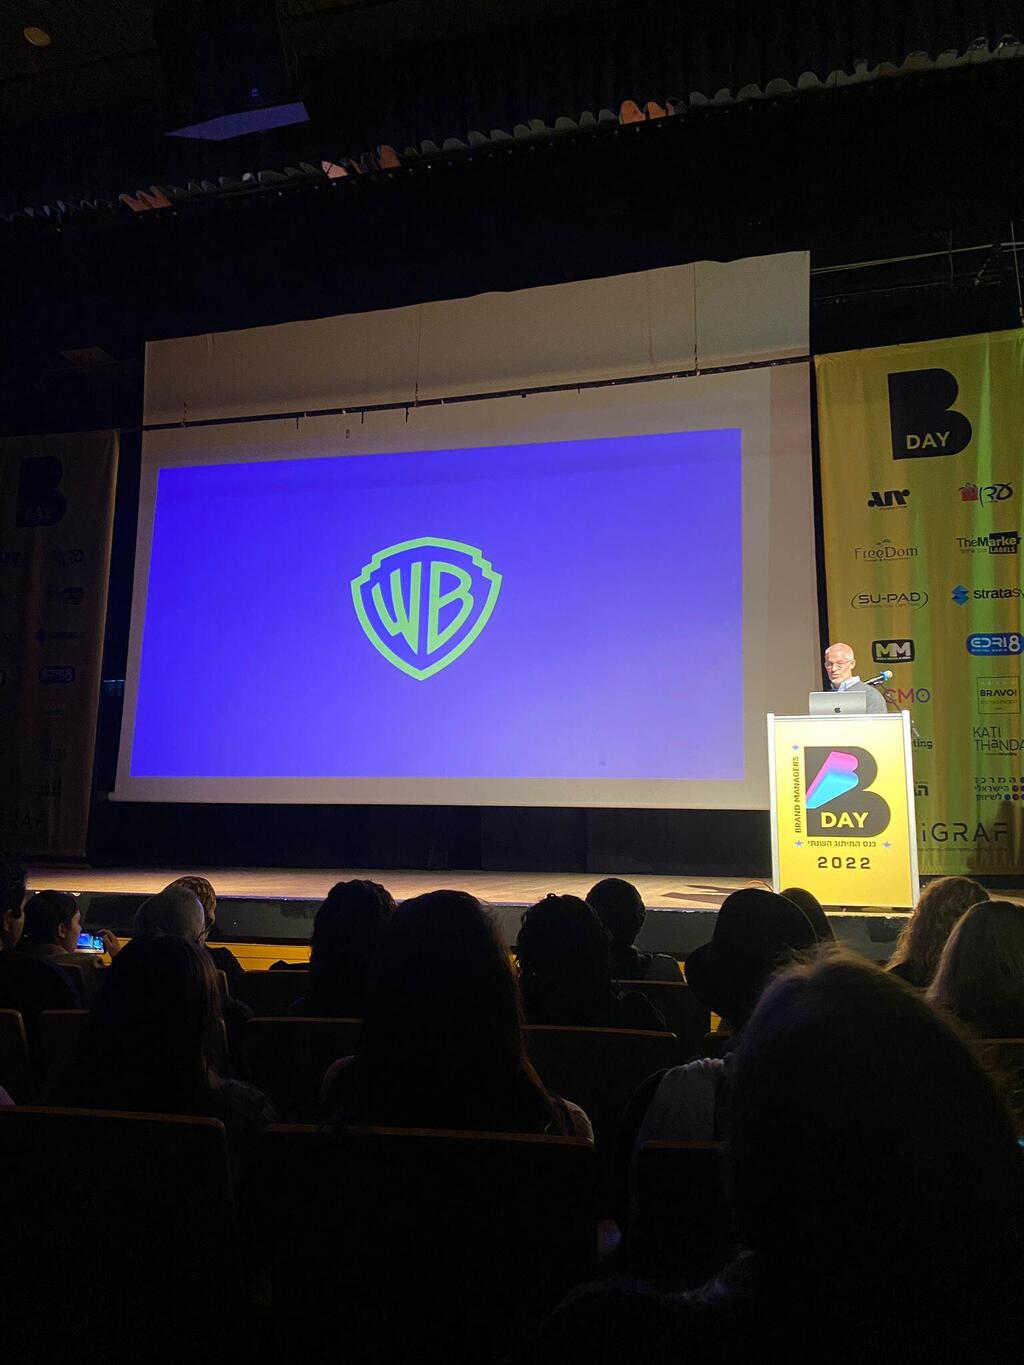 שגיא עומד לחשוף לוגו שייצר עבור חגיגות 100 שנים לענקית הקולנוע 'Warner Bros'